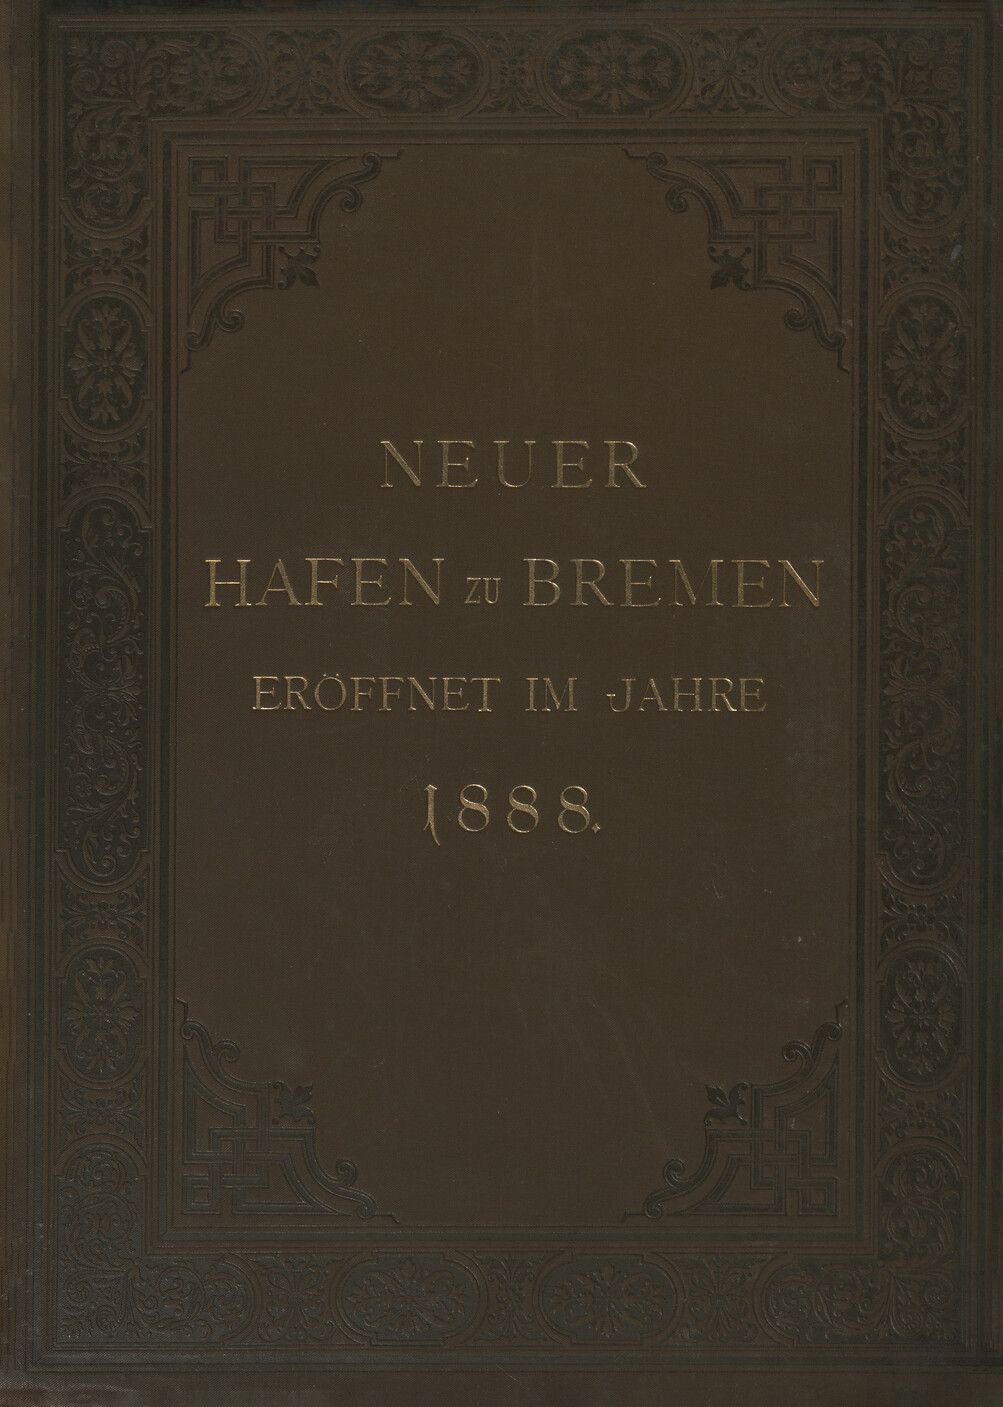 Neue Hafen-Anlagen zu Bremen eröffnet im Jahre 1888